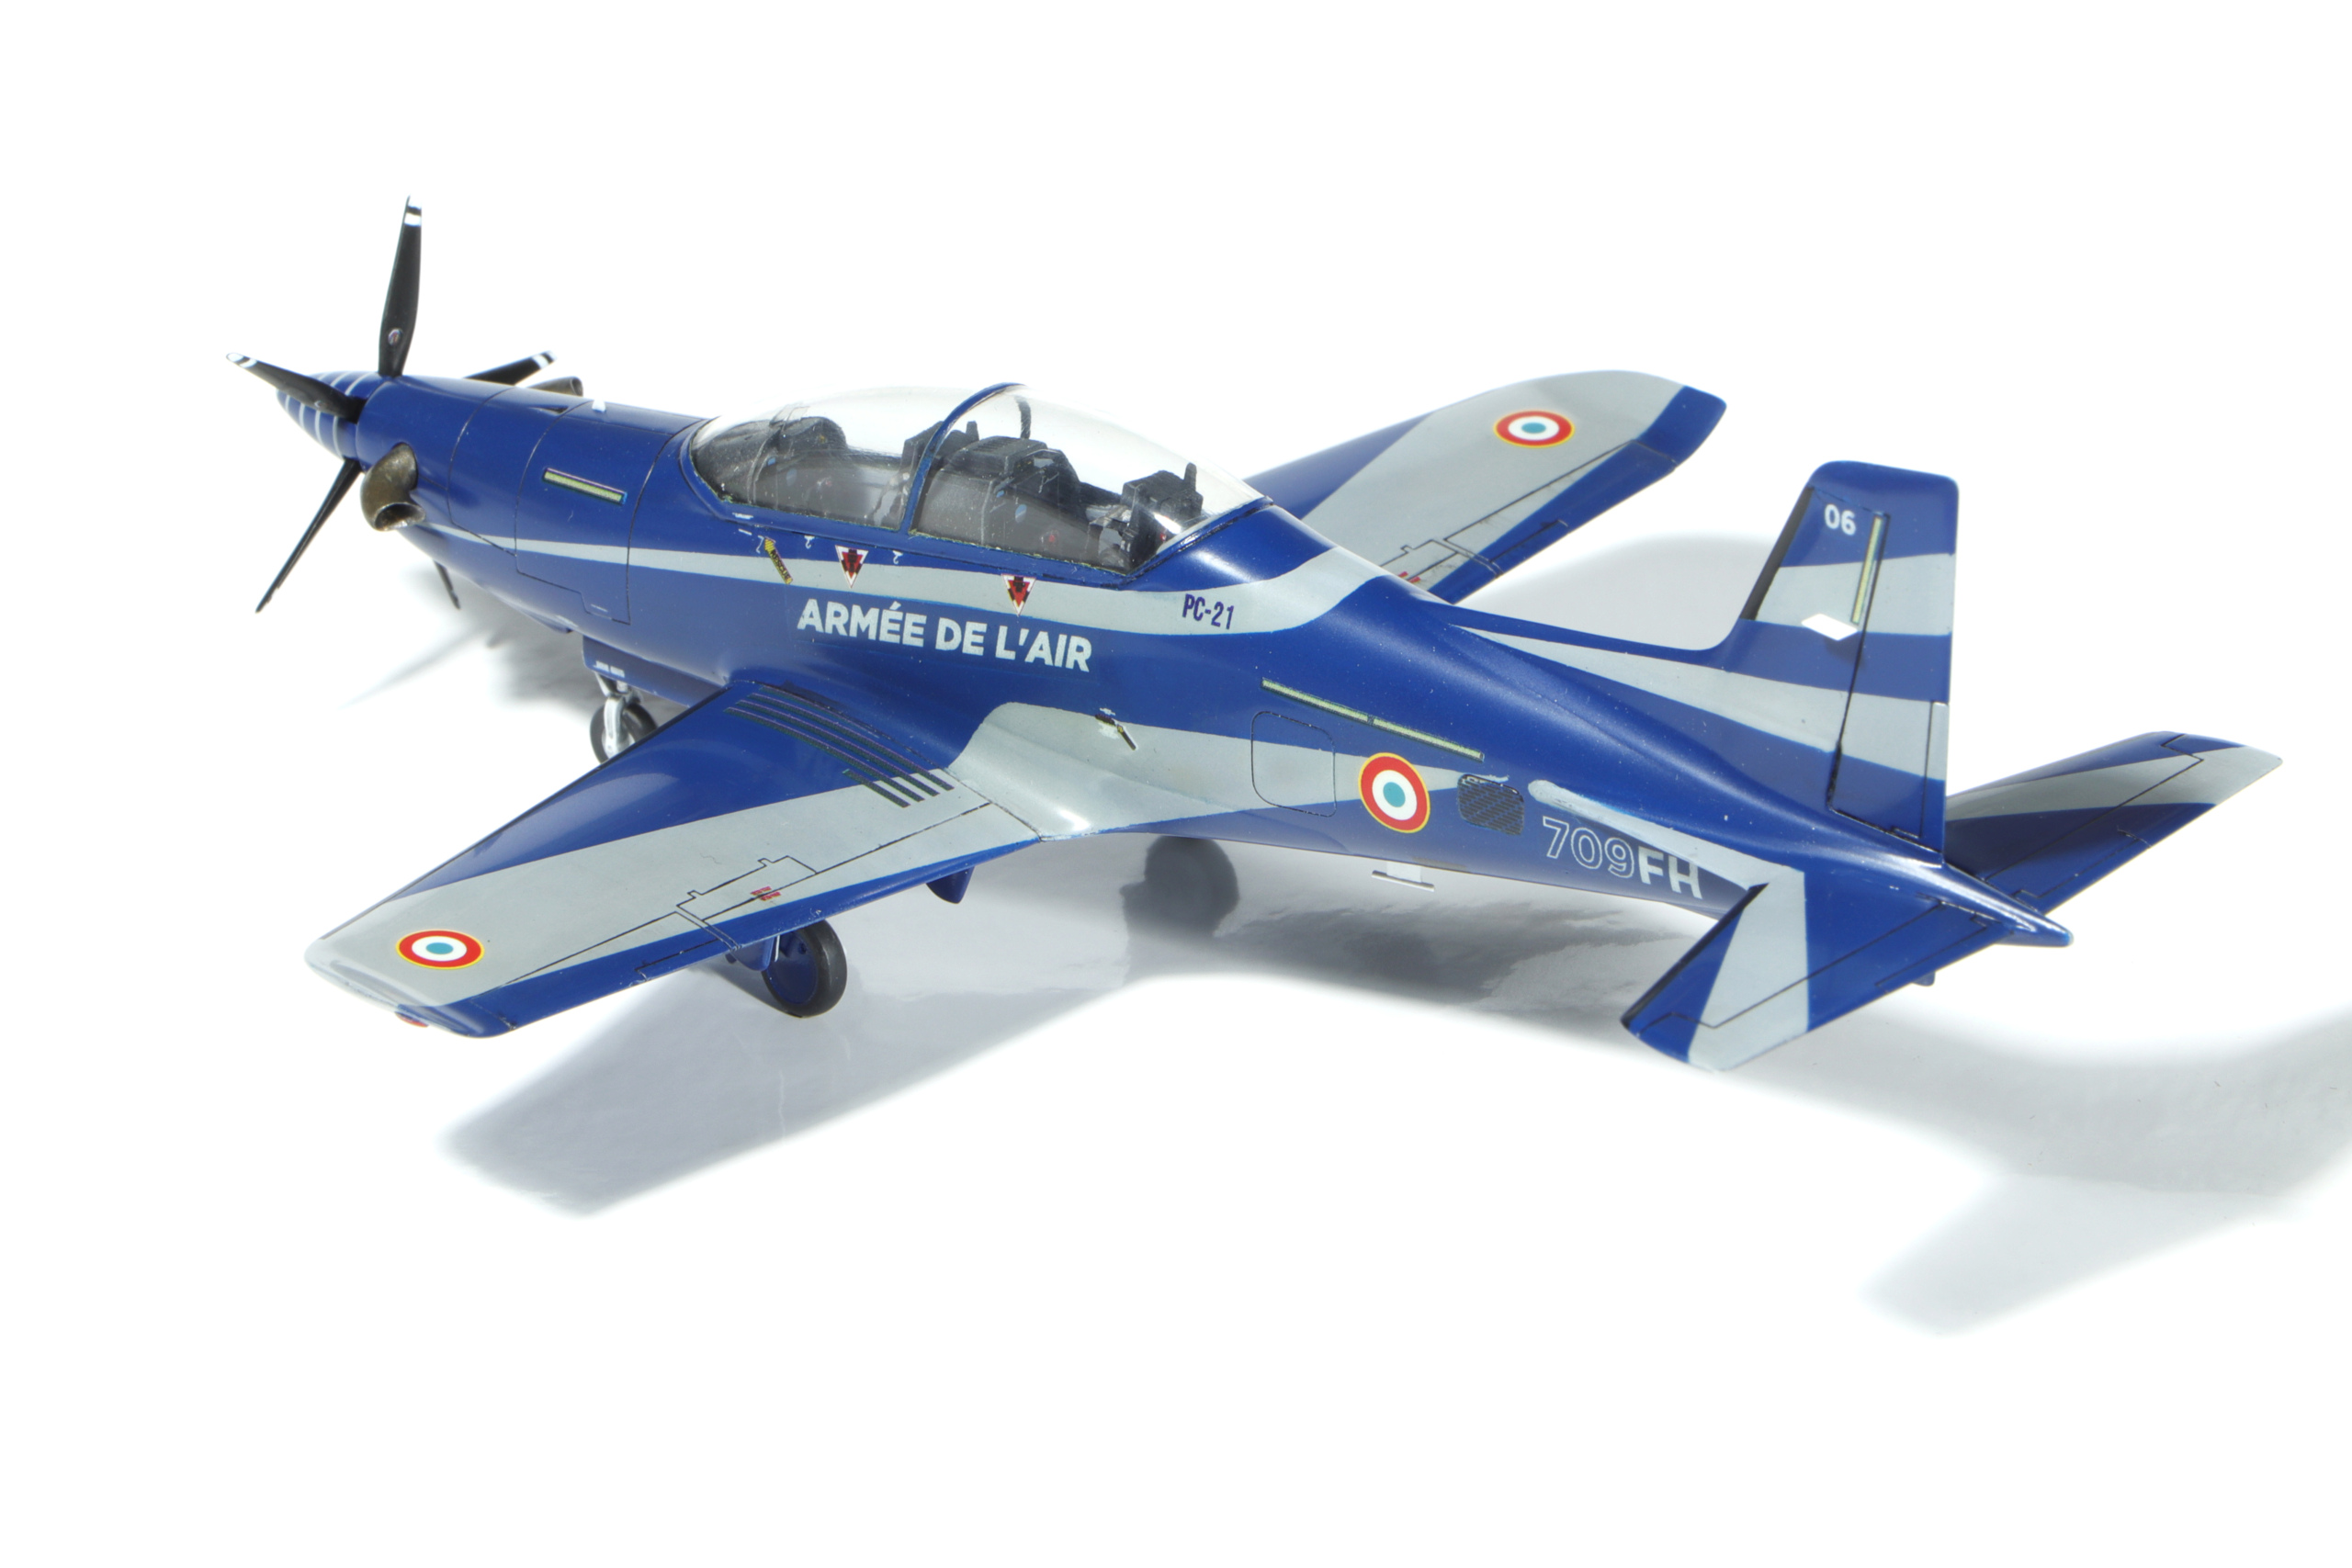 1/72 PC-21 Armée de l'air - 3D Blitz Models Img_9721